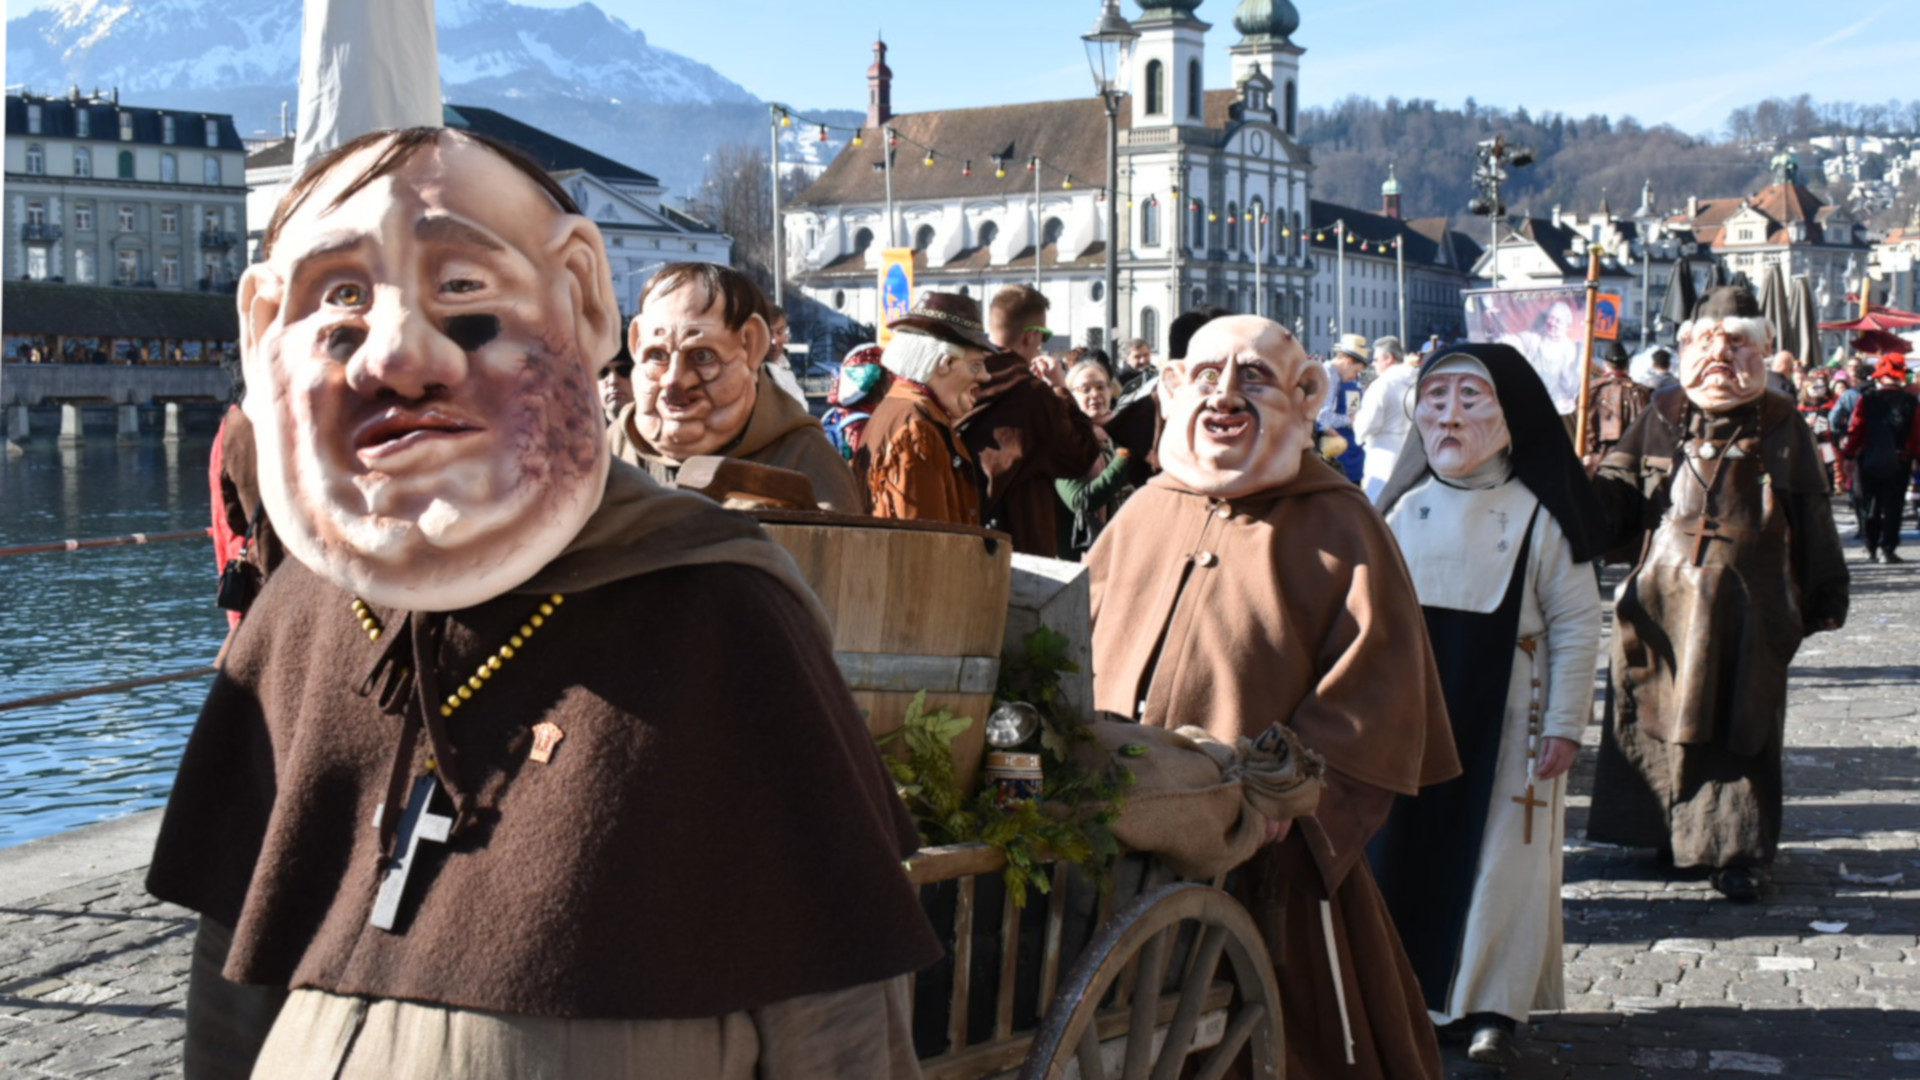 Arg lädiert: Mönche und Nonnen an der Luzerner Fasnacht